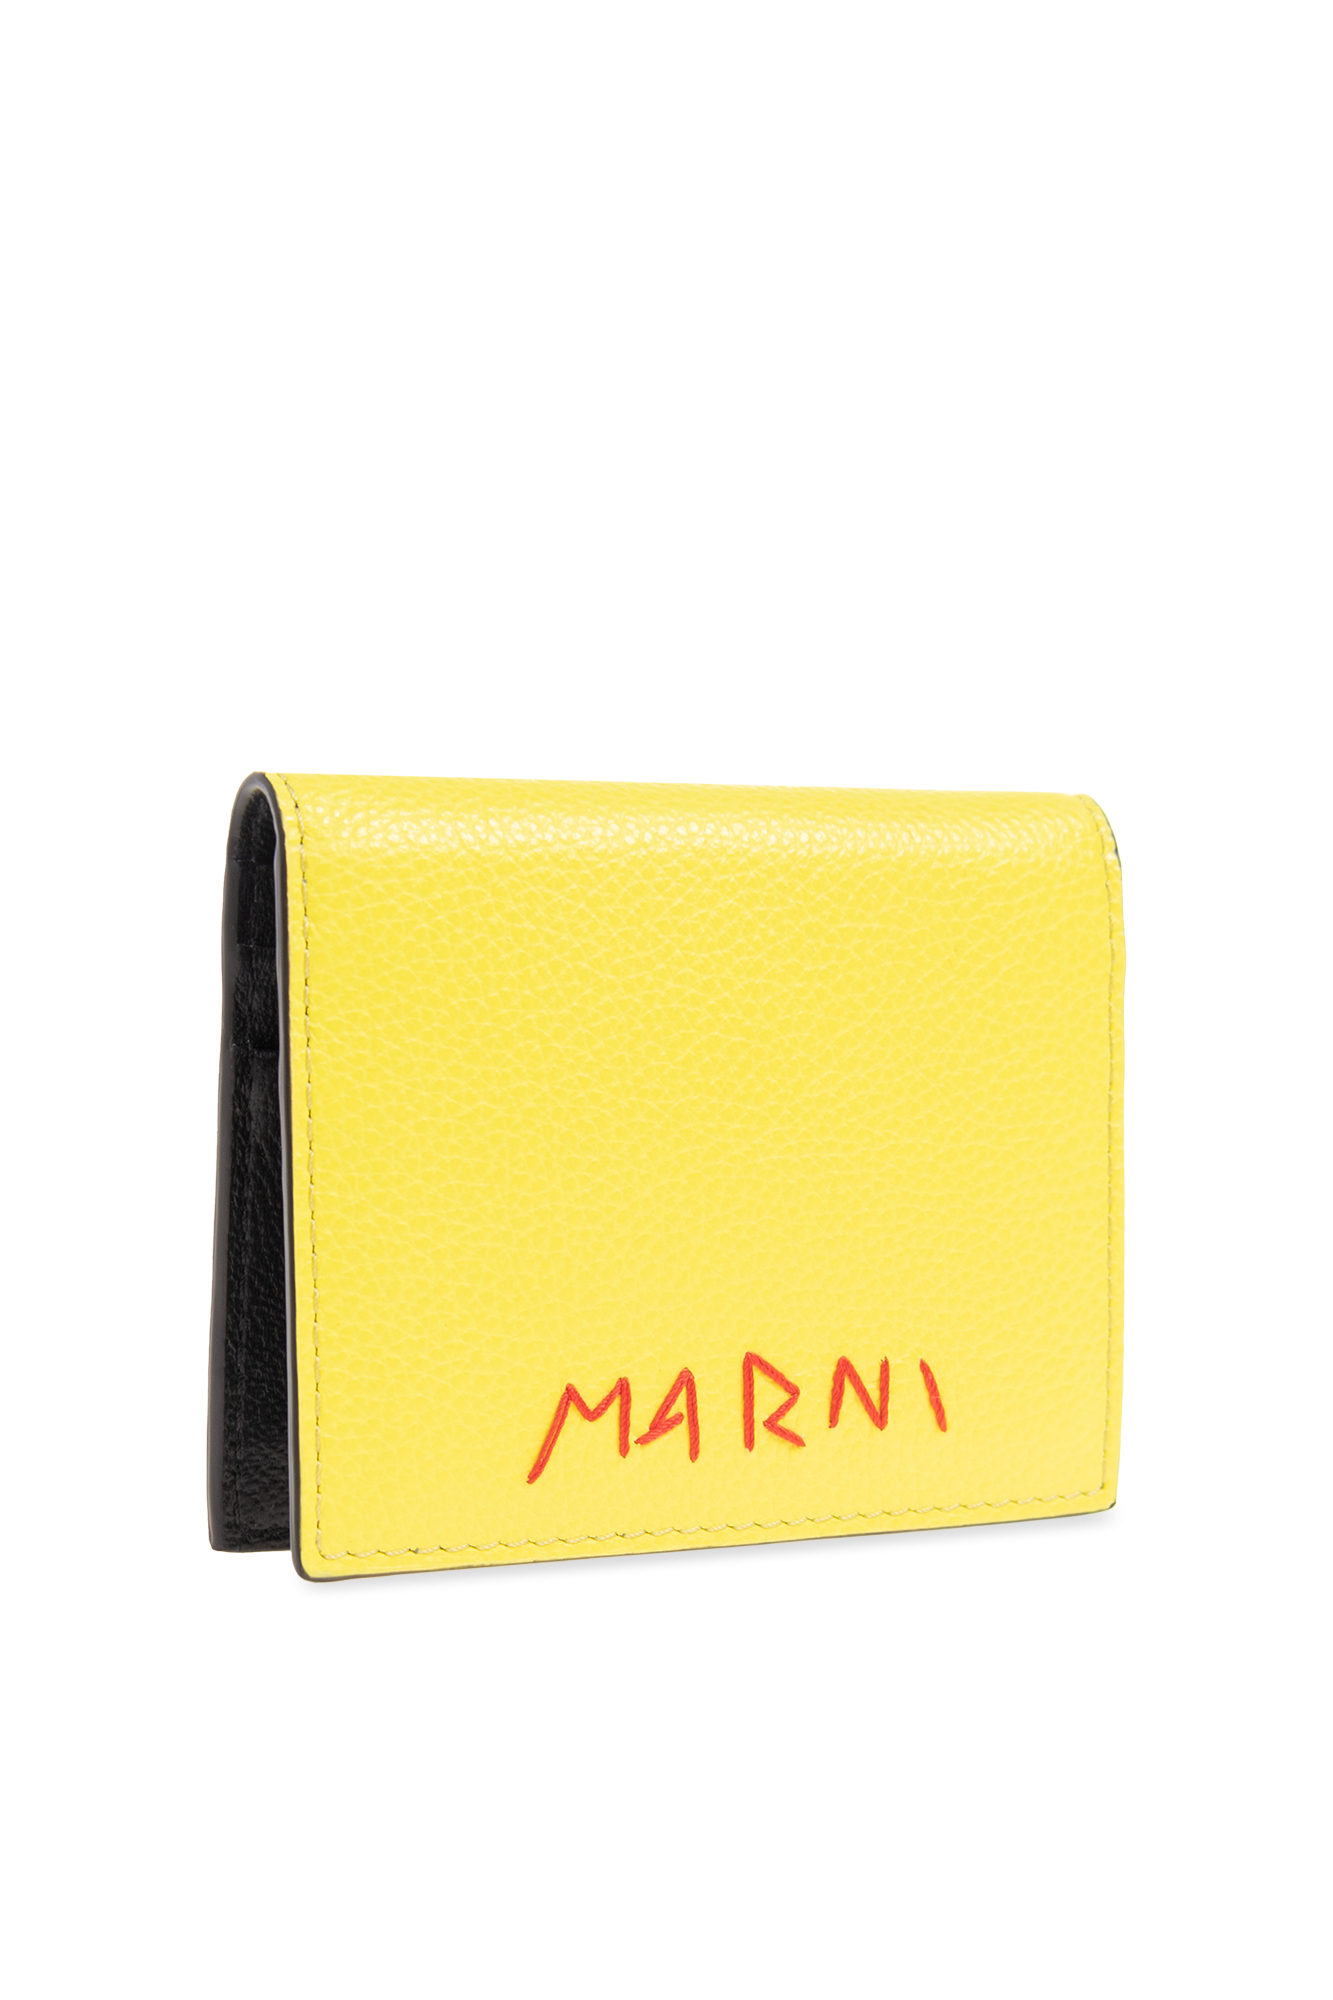 Marni Card holder